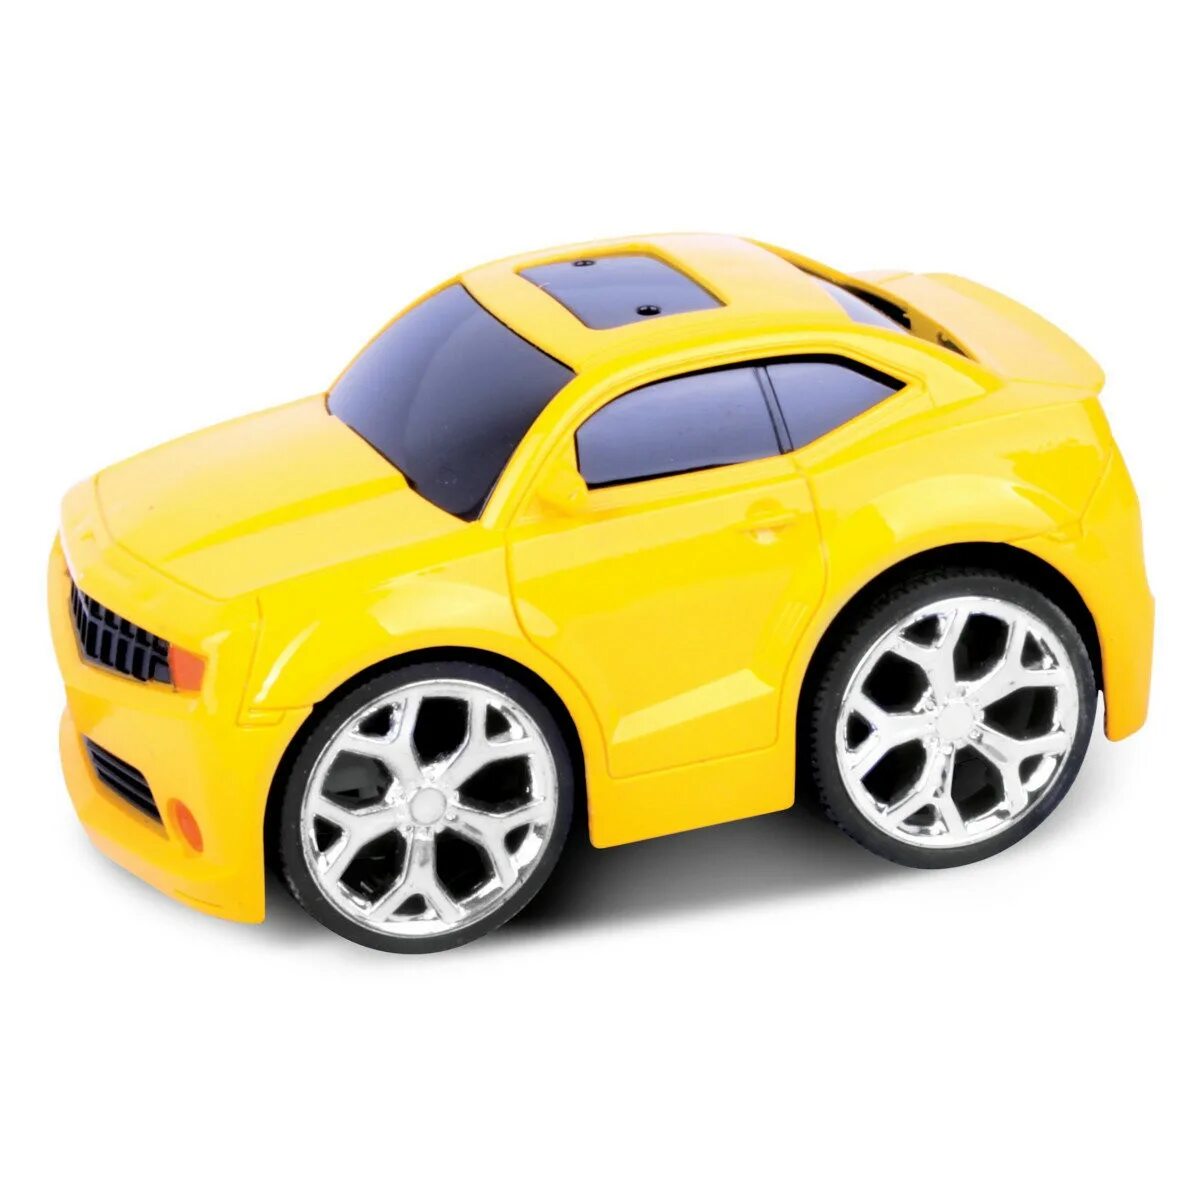 Машинка MKB 5588-08 желтый. Игрушечные машины. Машинка игрушка для детей. Желтая машина игрушечная.